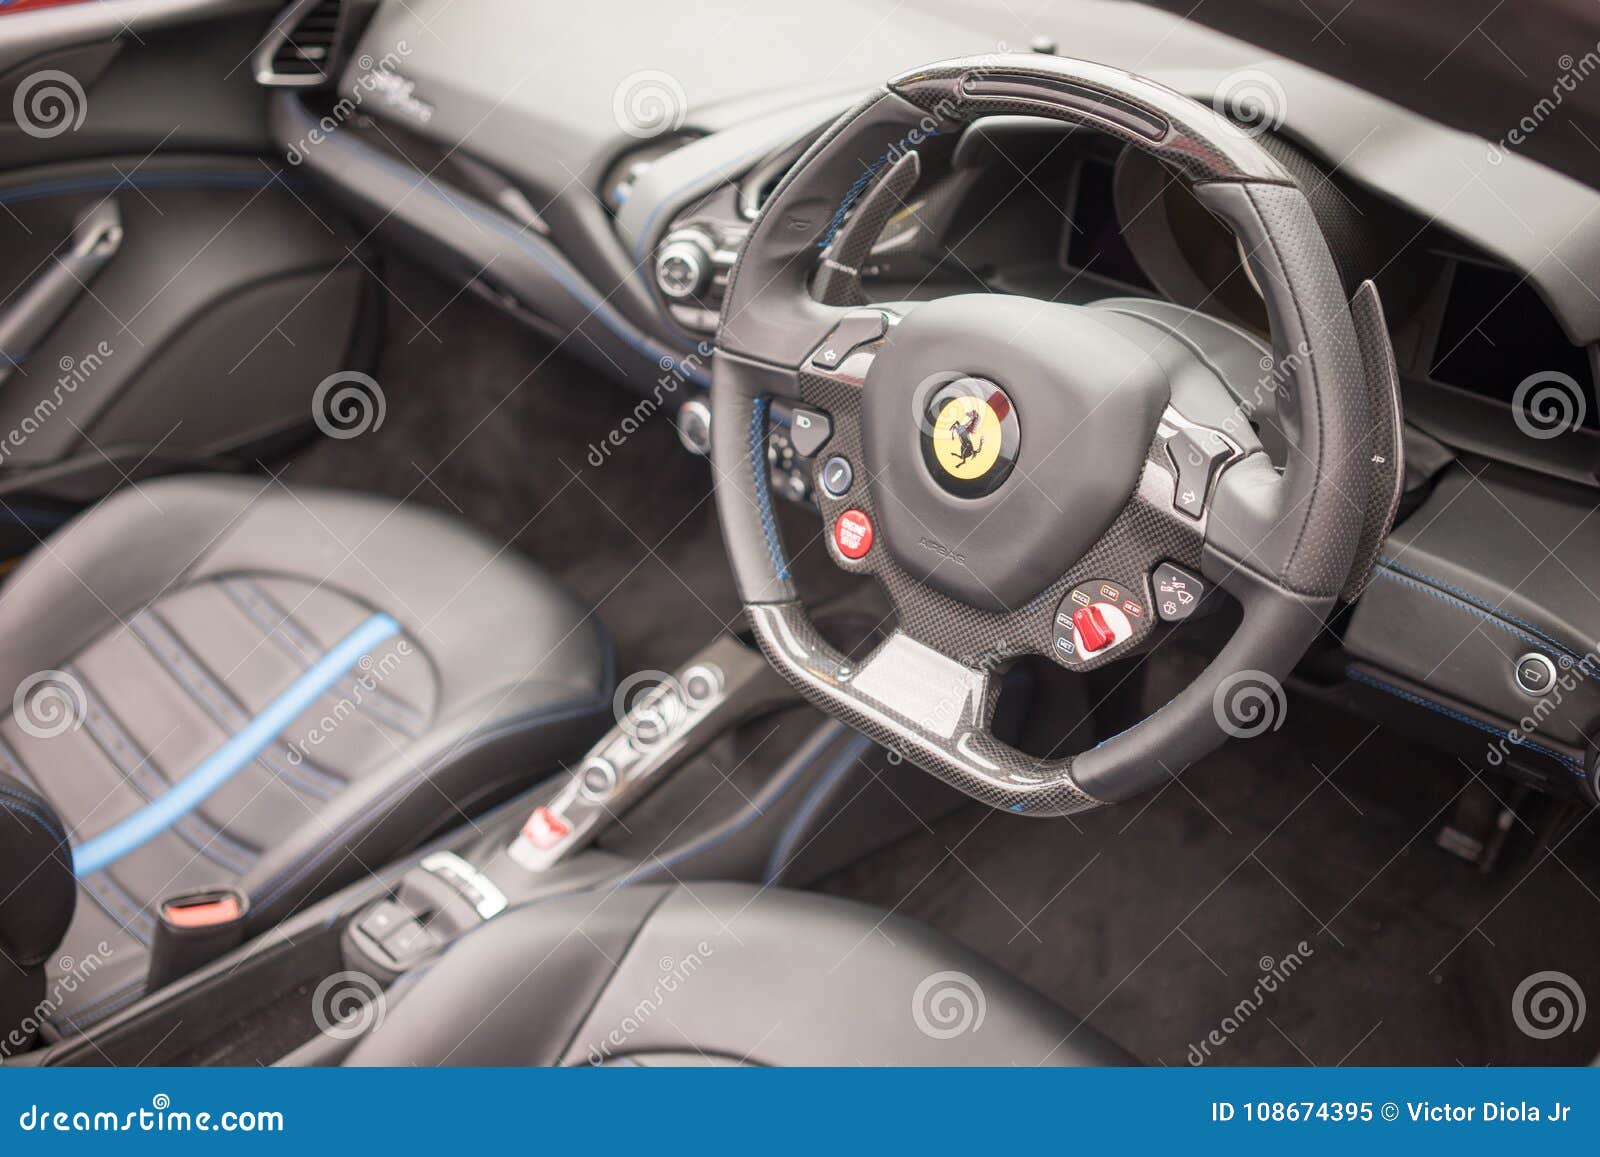 Ferrari Sports Car Interior Editorial Image Image Of